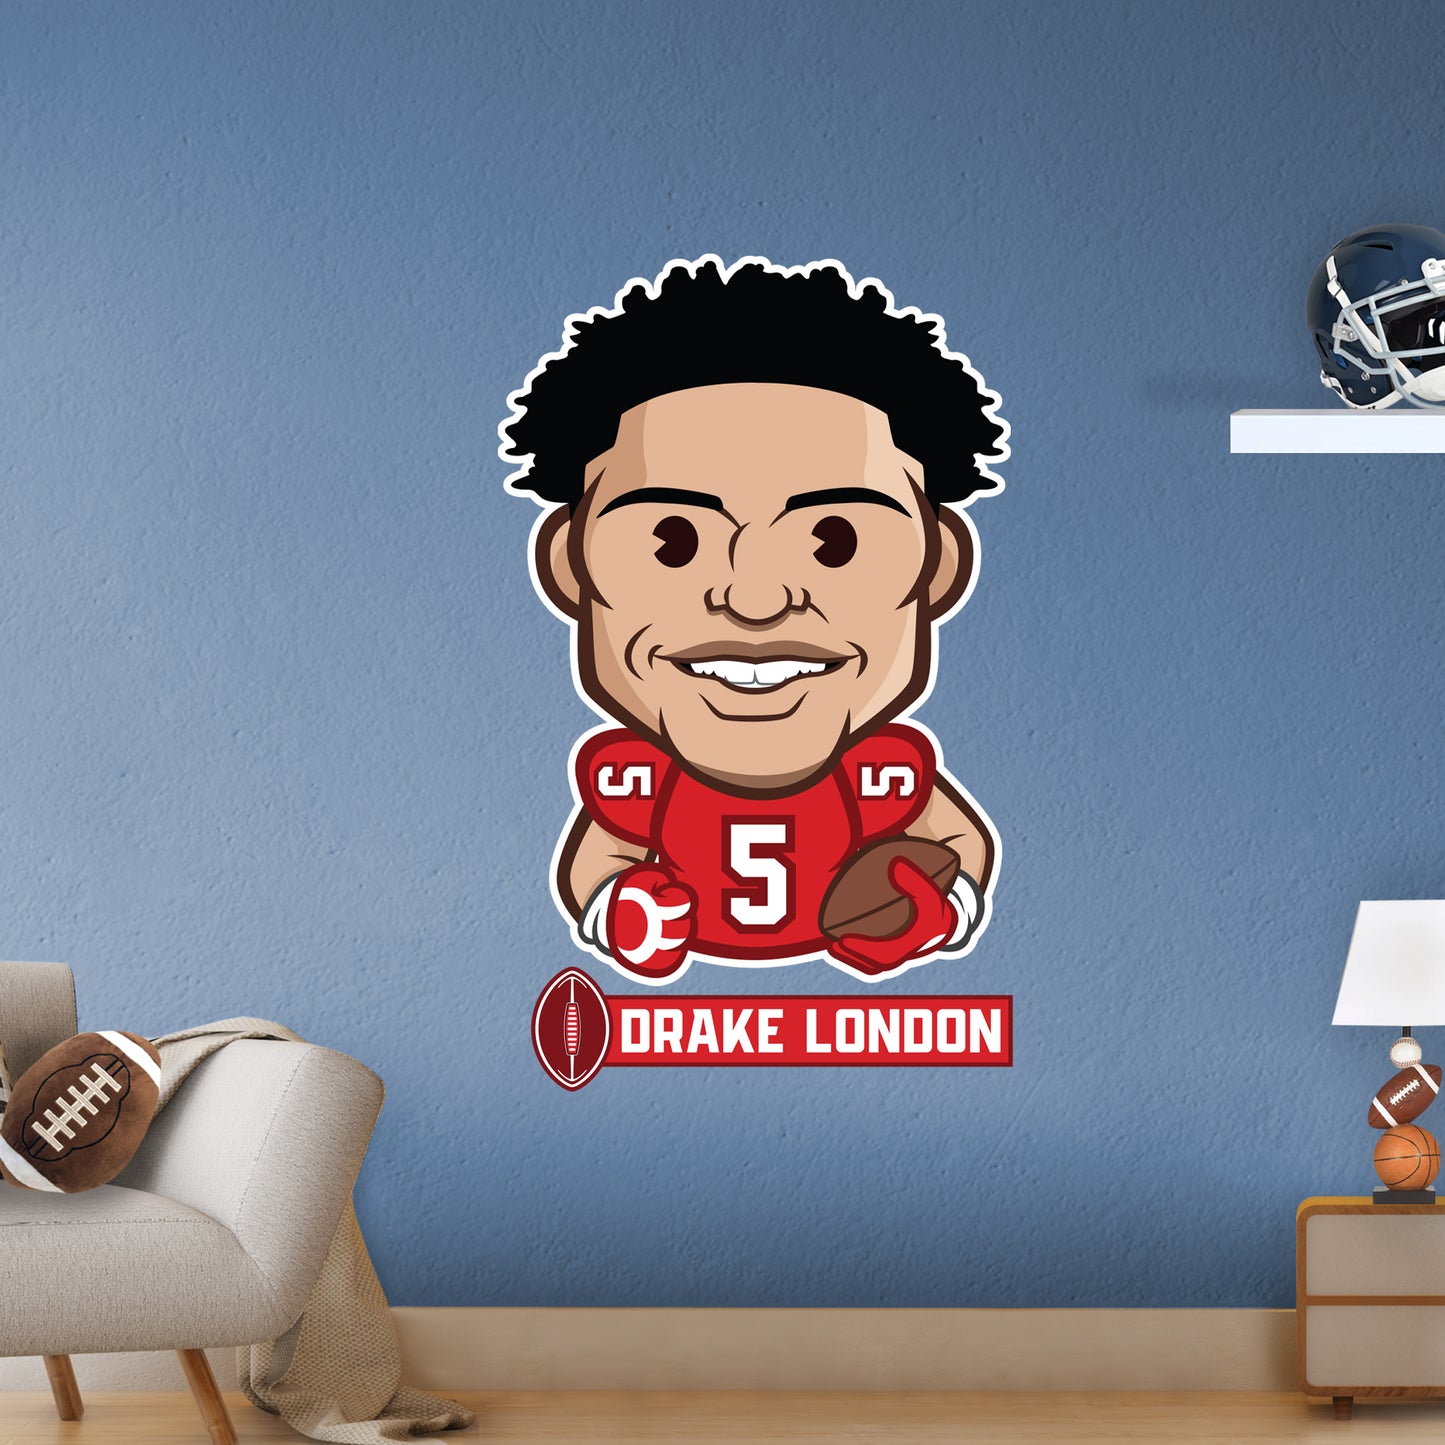 Atlanta Falcons: Drake London Emoji - Officially Licensed NFLPA Removable Adhesive Decal